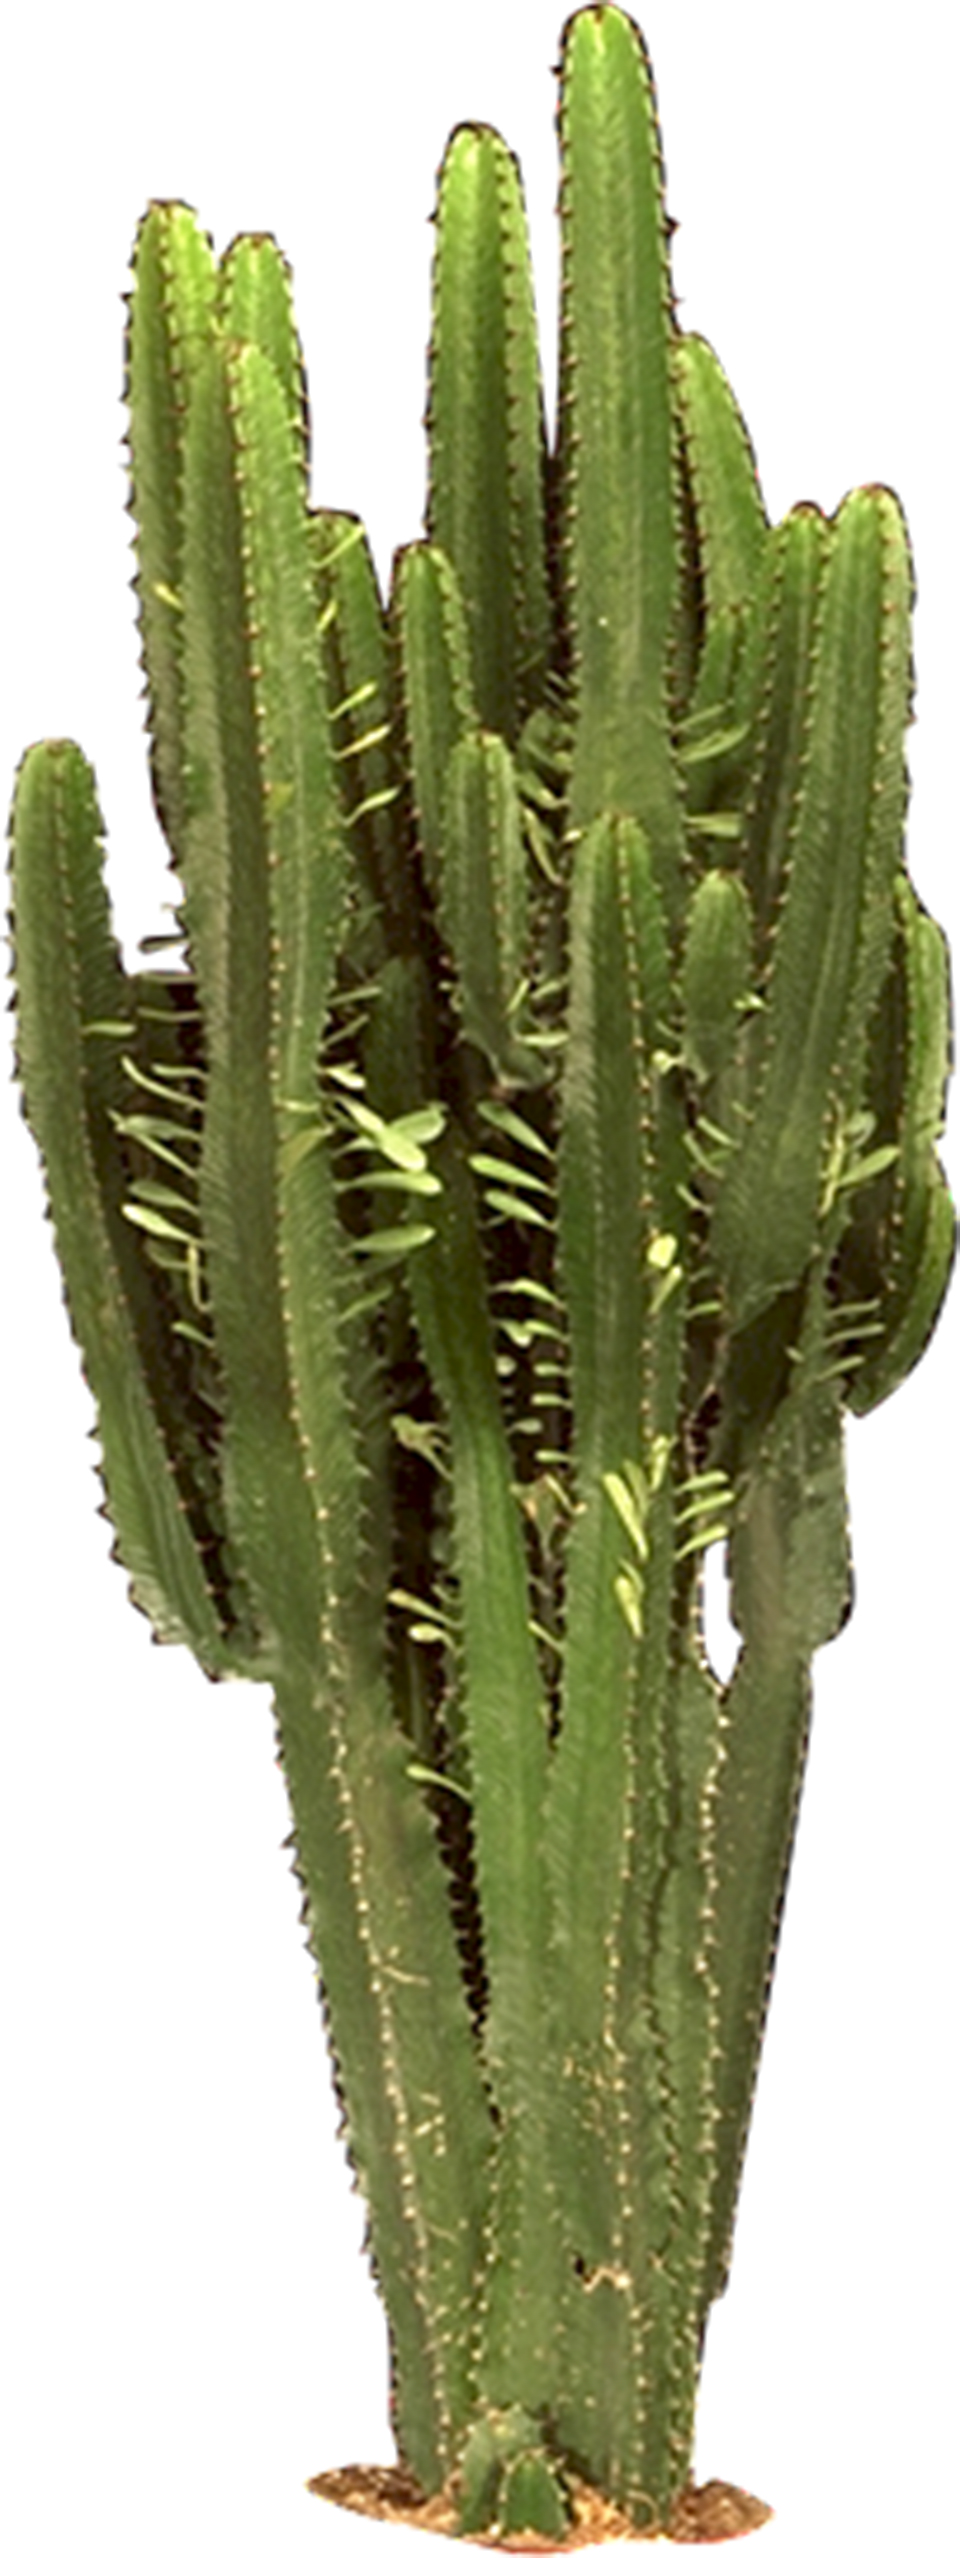 Cactus HD PNG - 119299